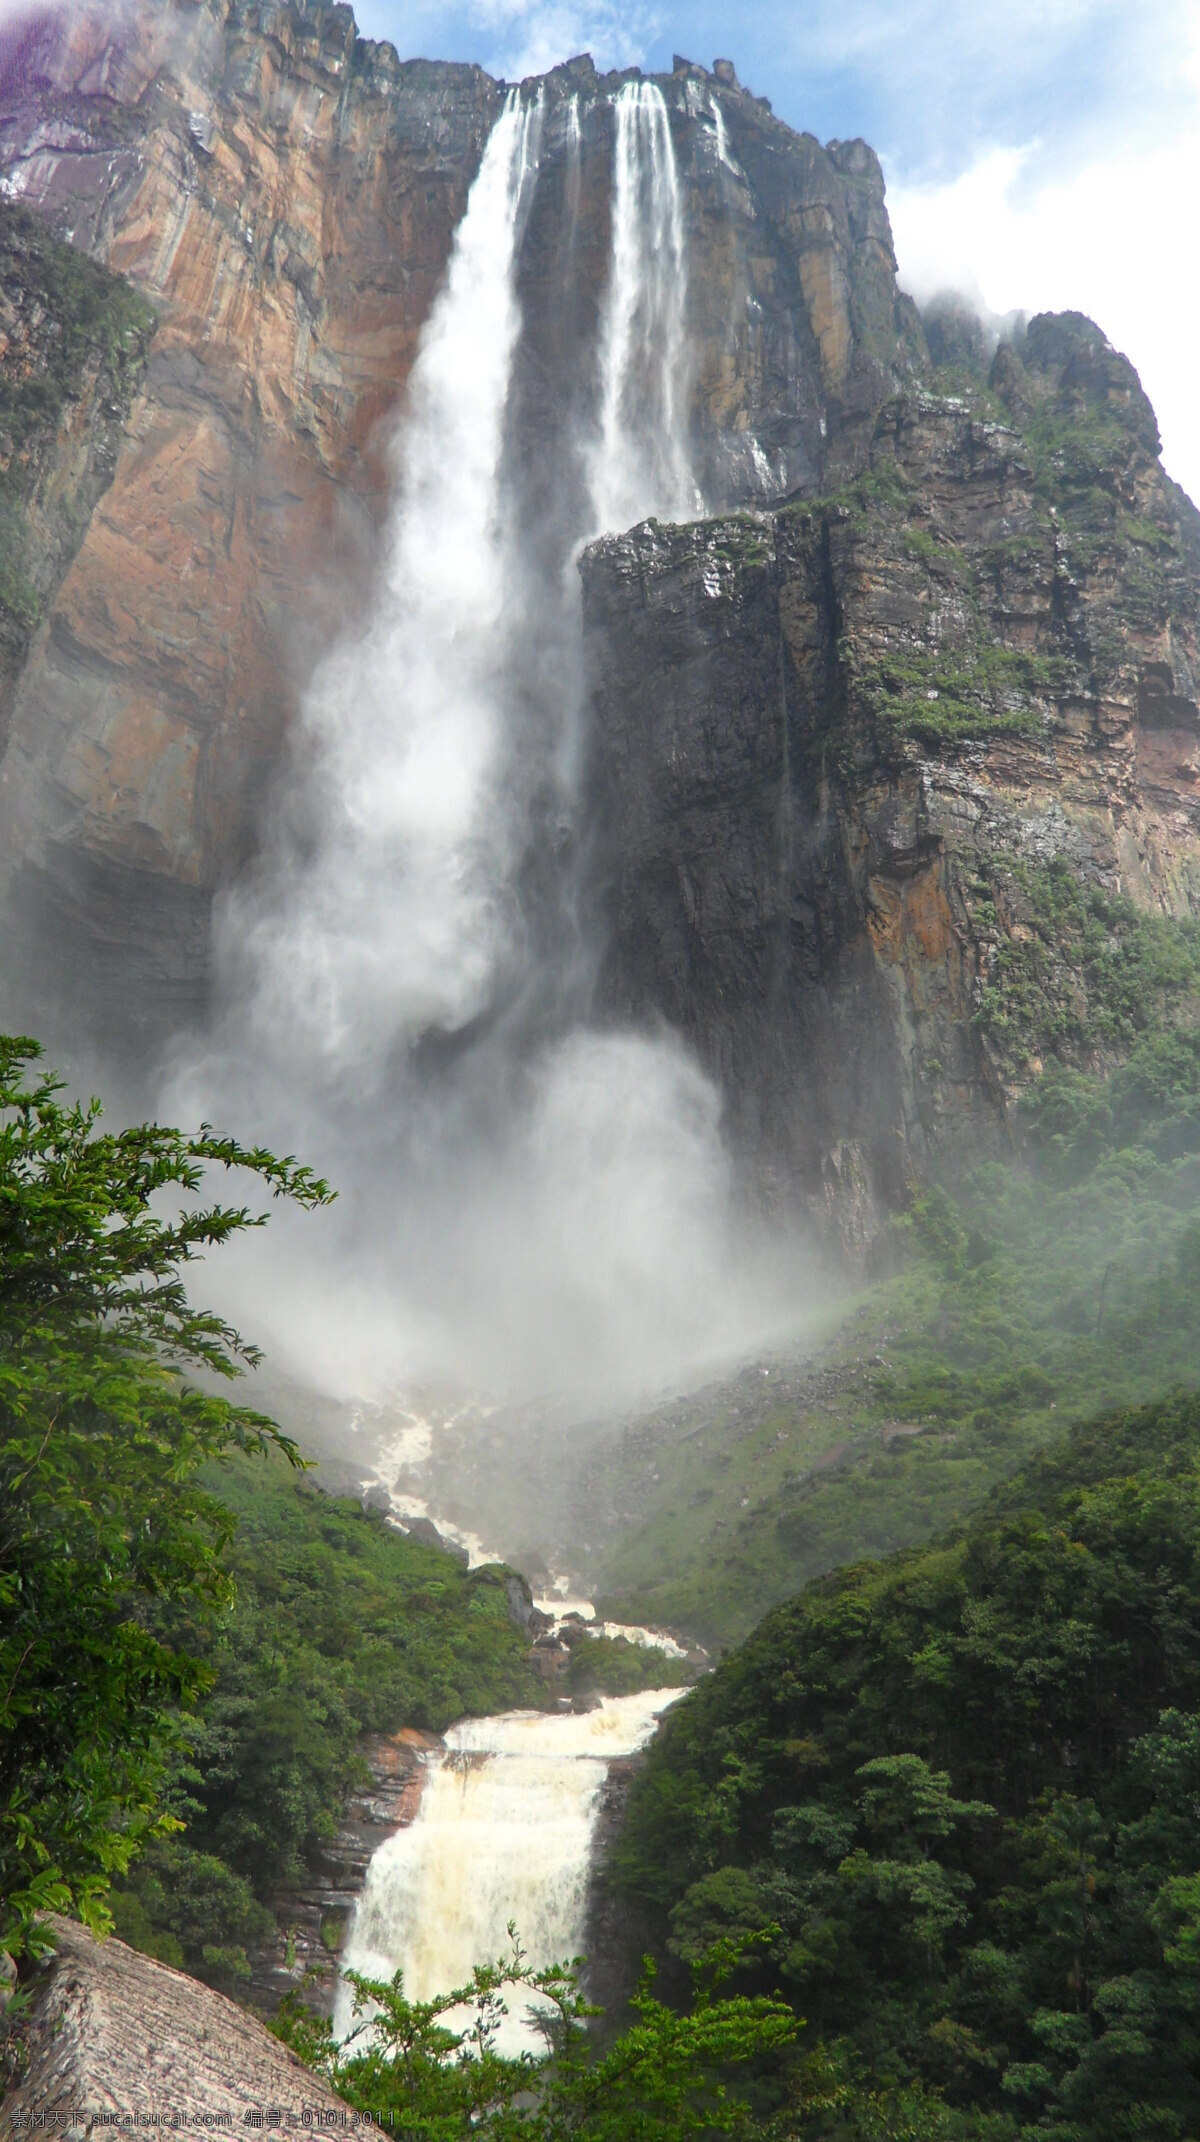 天使瀑布 瀑布 世界最长 壮观 千米高 委内瑞拉 天使 自然风景 自然景观